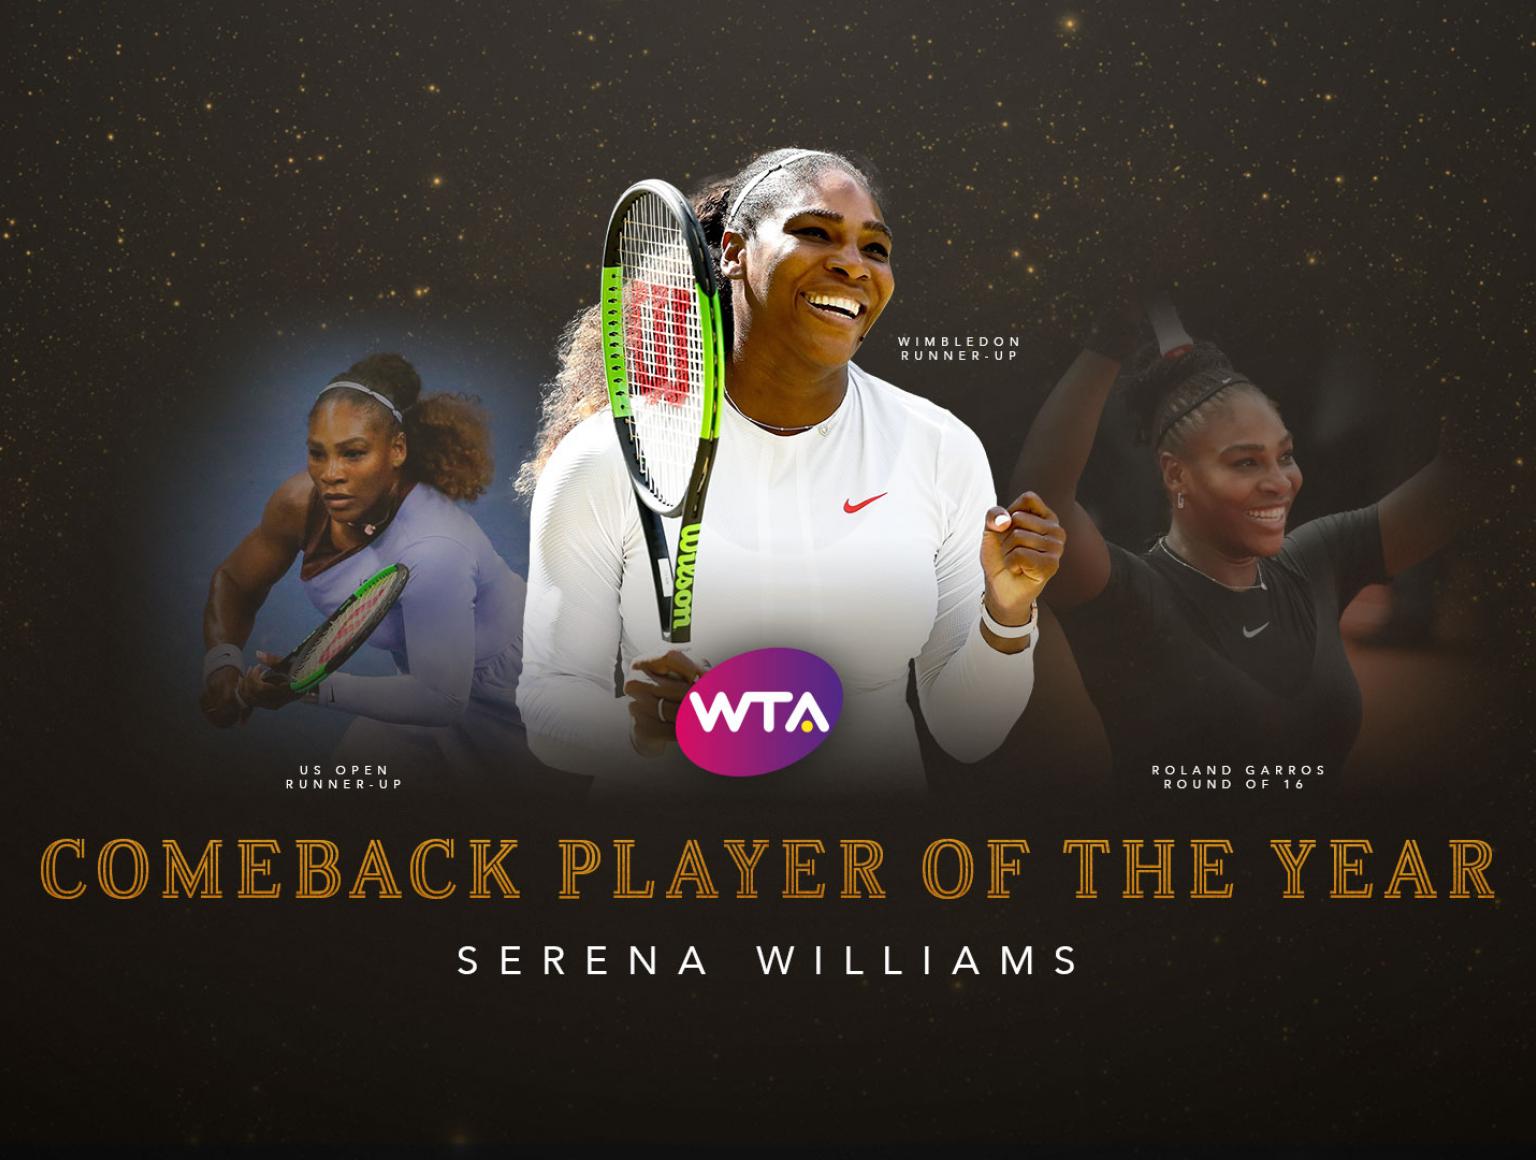 WTA公布2018赛季球员大奖获奖名单！